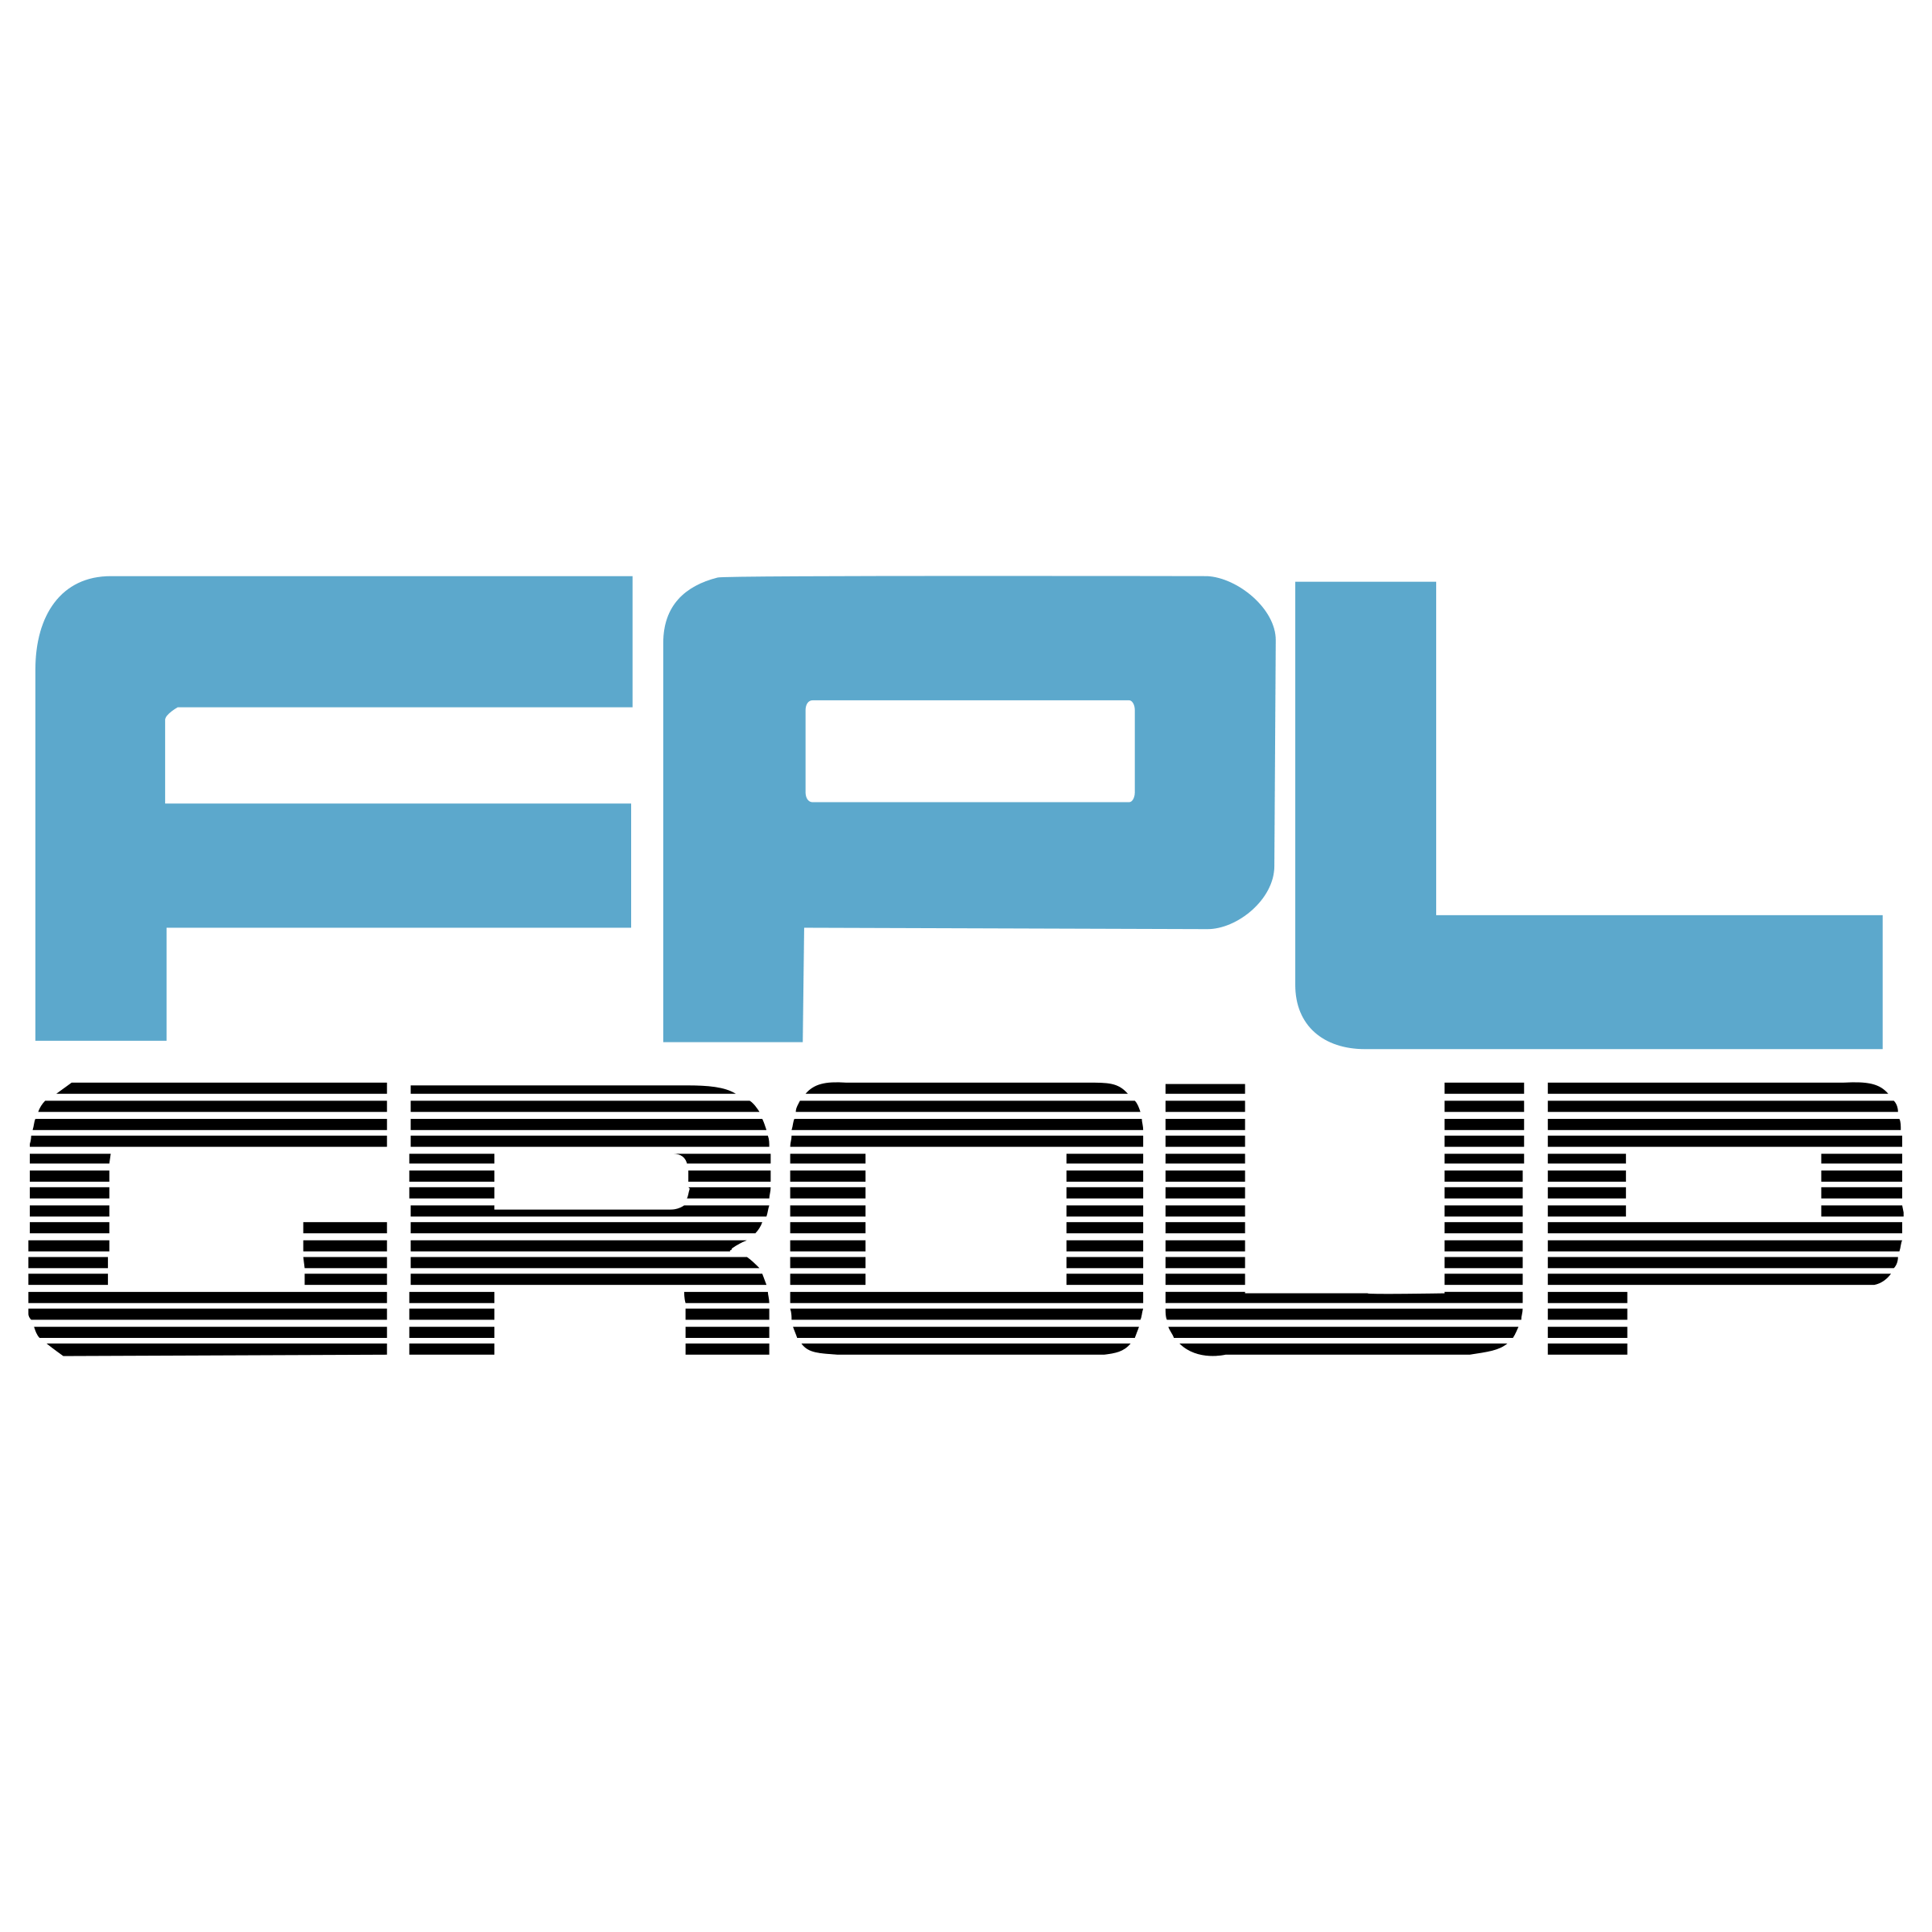 FPL Logo - FPL Group Logo PNG Transparent & SVG Vector